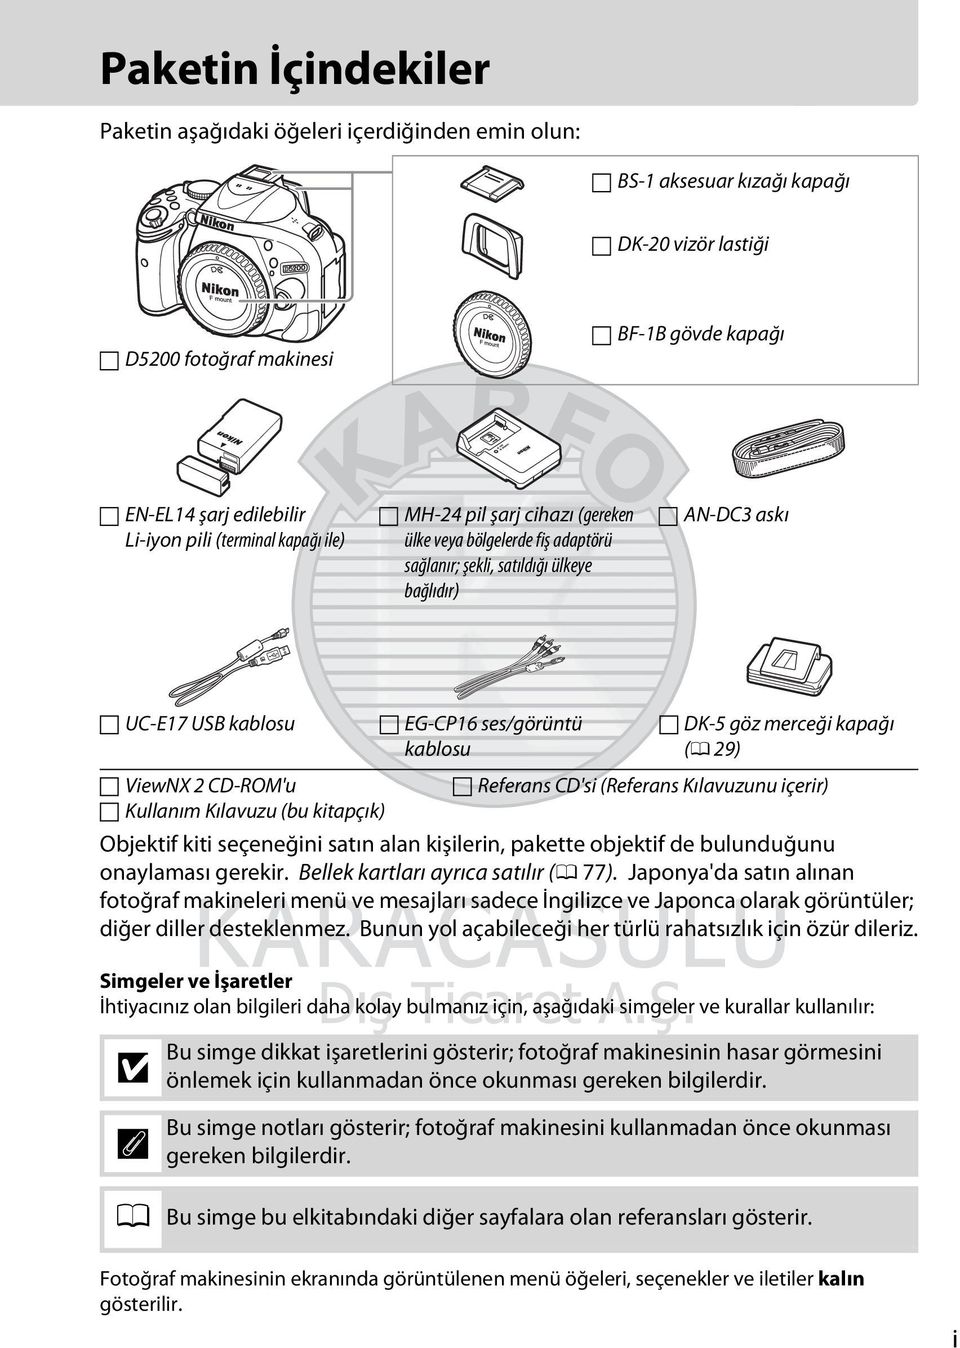 (bu kitapçık) EG-CP16 ses/görüntü kablosu DK-5 göz merceği kapağı (0 29) Referans CD'si (Referans Kılavuzunu içerir) Objektif kiti seçeneğini satın alan kişilerin, pakette objektif de bulunduğunu